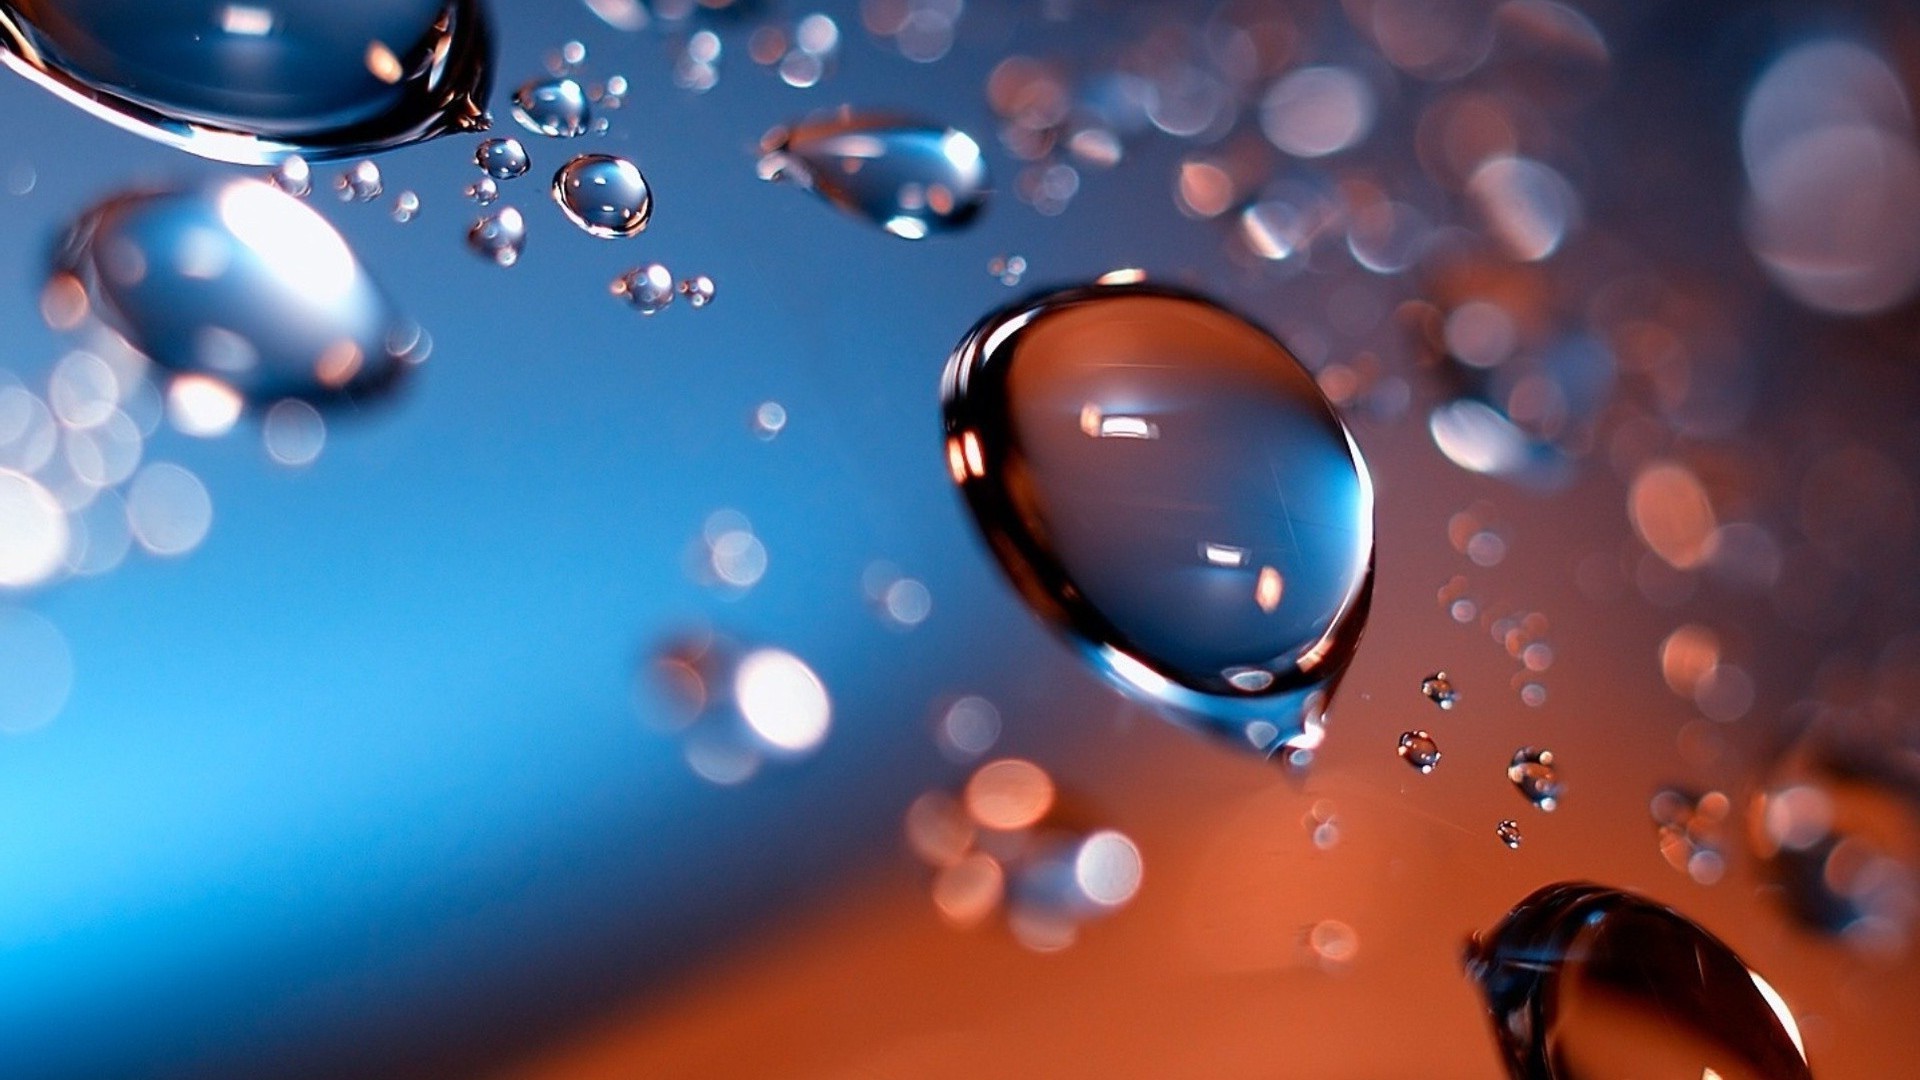 капельки и вода воды дождь падение пузырь капли рабочего стола аннотация жидкость отражение круглый светит мокрый свет чистые цвет сфера чистота росы яркий всплеск